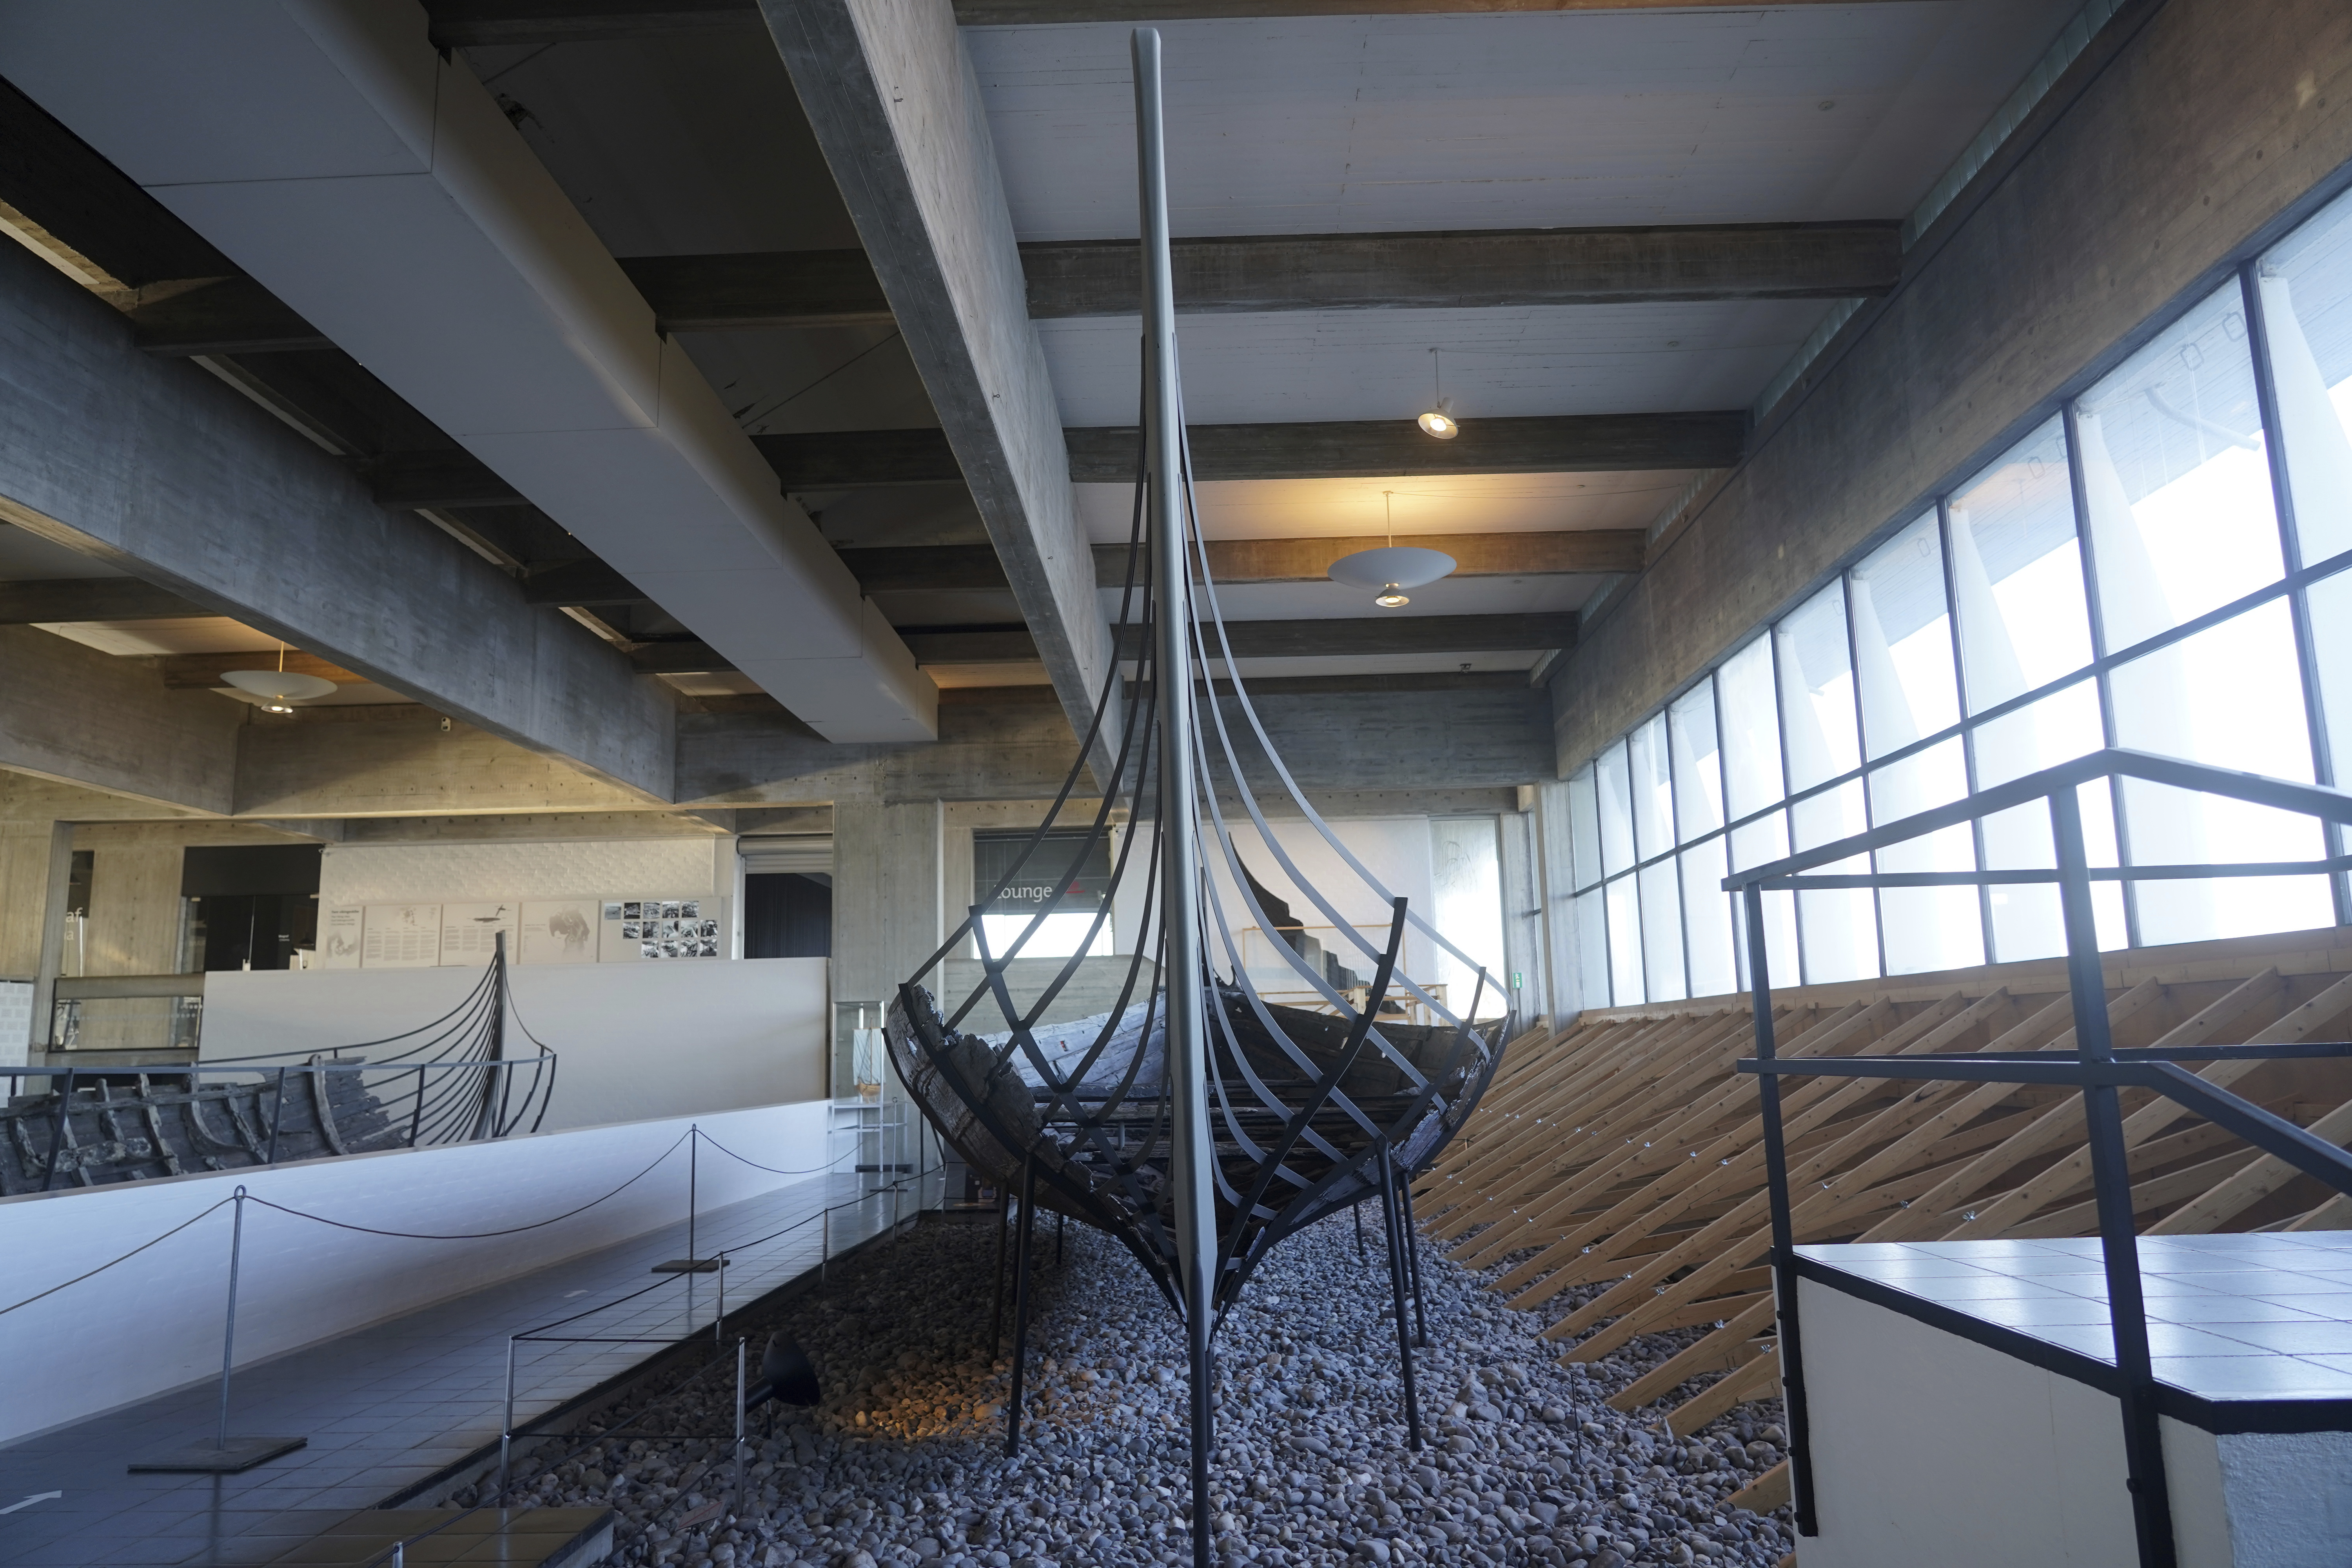 Un buque mercante costero vikingo de 14 metros del siglo XI, se encuentra en exhibición en el Museo de Barcos Vikingos. Roskilde, Dinamarca, lunes 17 de enero de 2022.  (AP Photo/James Brooks)

